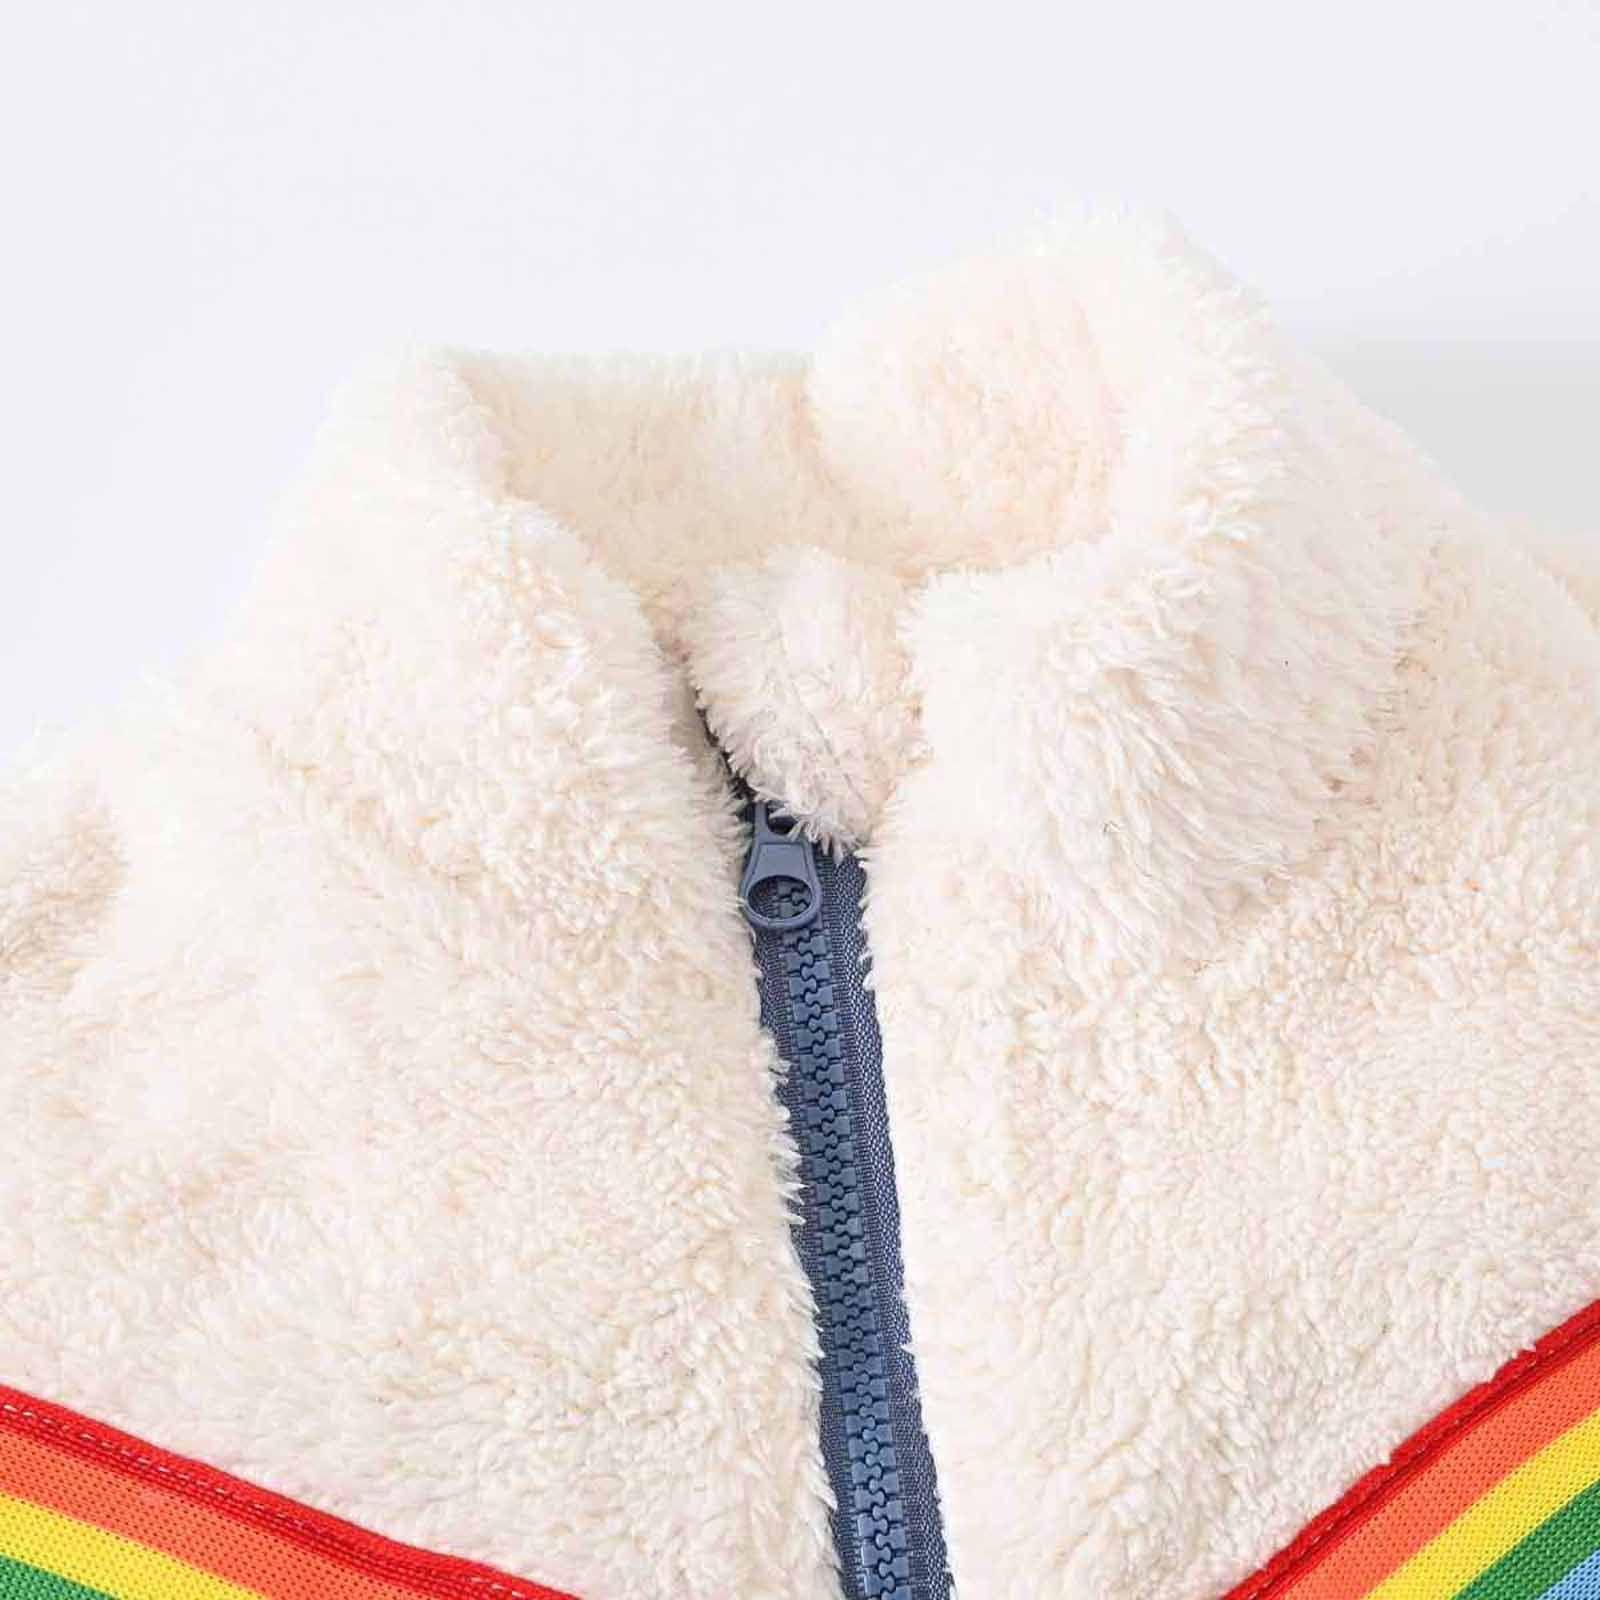 YYDGH Girls Zipper Jacket Fuzzy Sweatshirt Long Sleeve Casual Cozy Fleece Sherpa Outwear Coat Full-Zip Rainbow Jackets(Blue,5-6 Years) - image 3 of 8